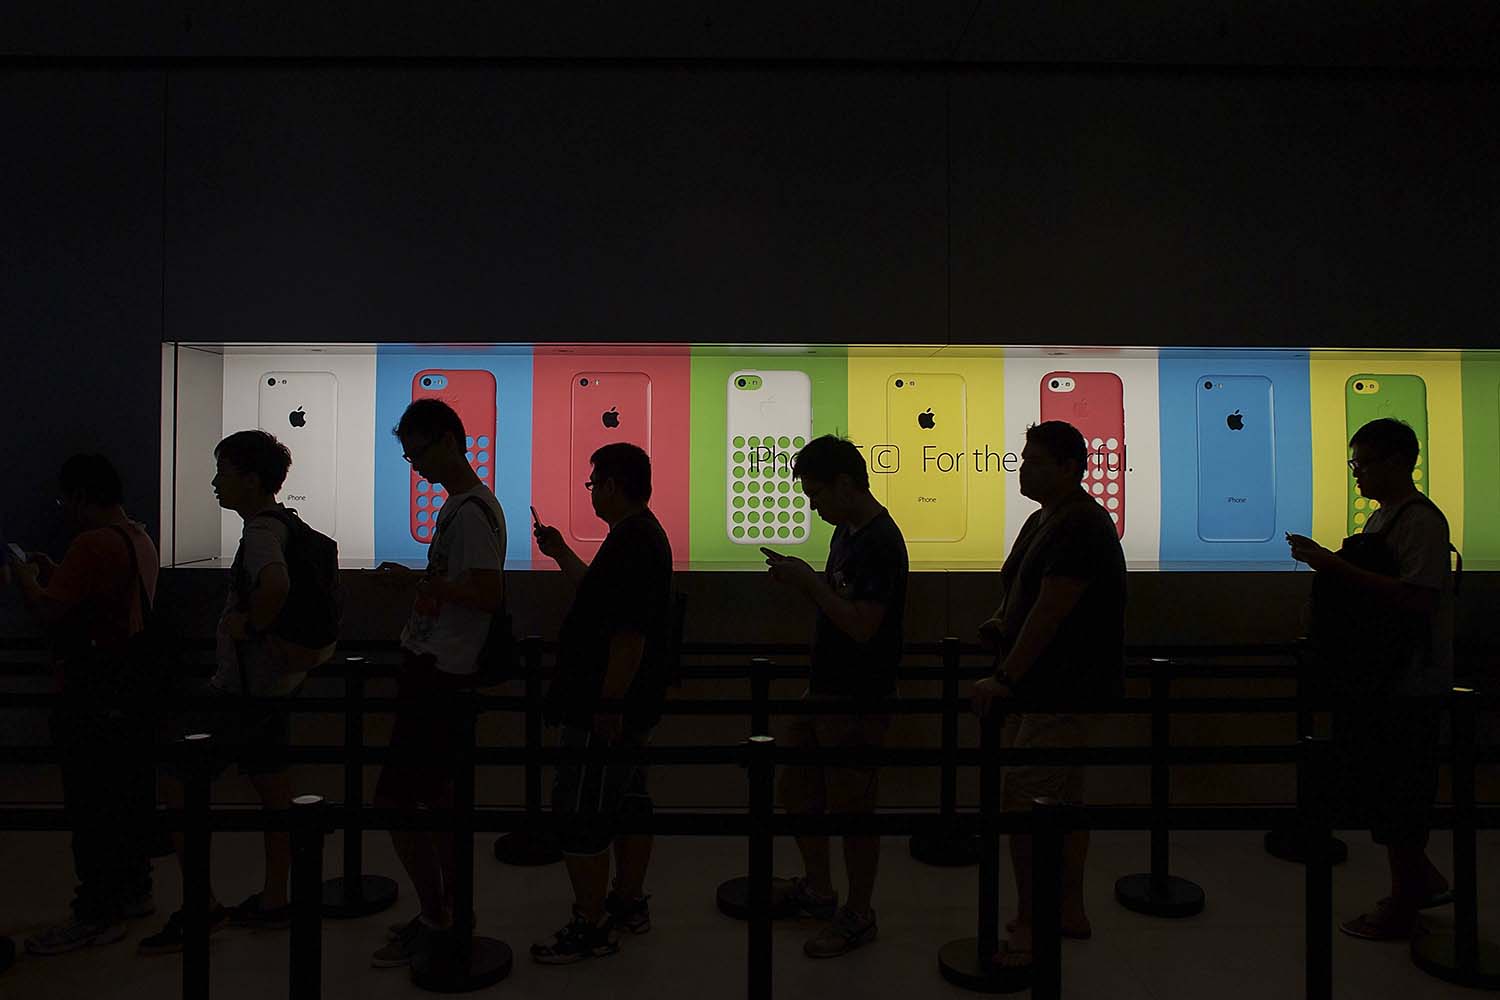 Se forman colas en Hong Kong para comprar los nuevos modelos de iPhone, el 5S y el 5C